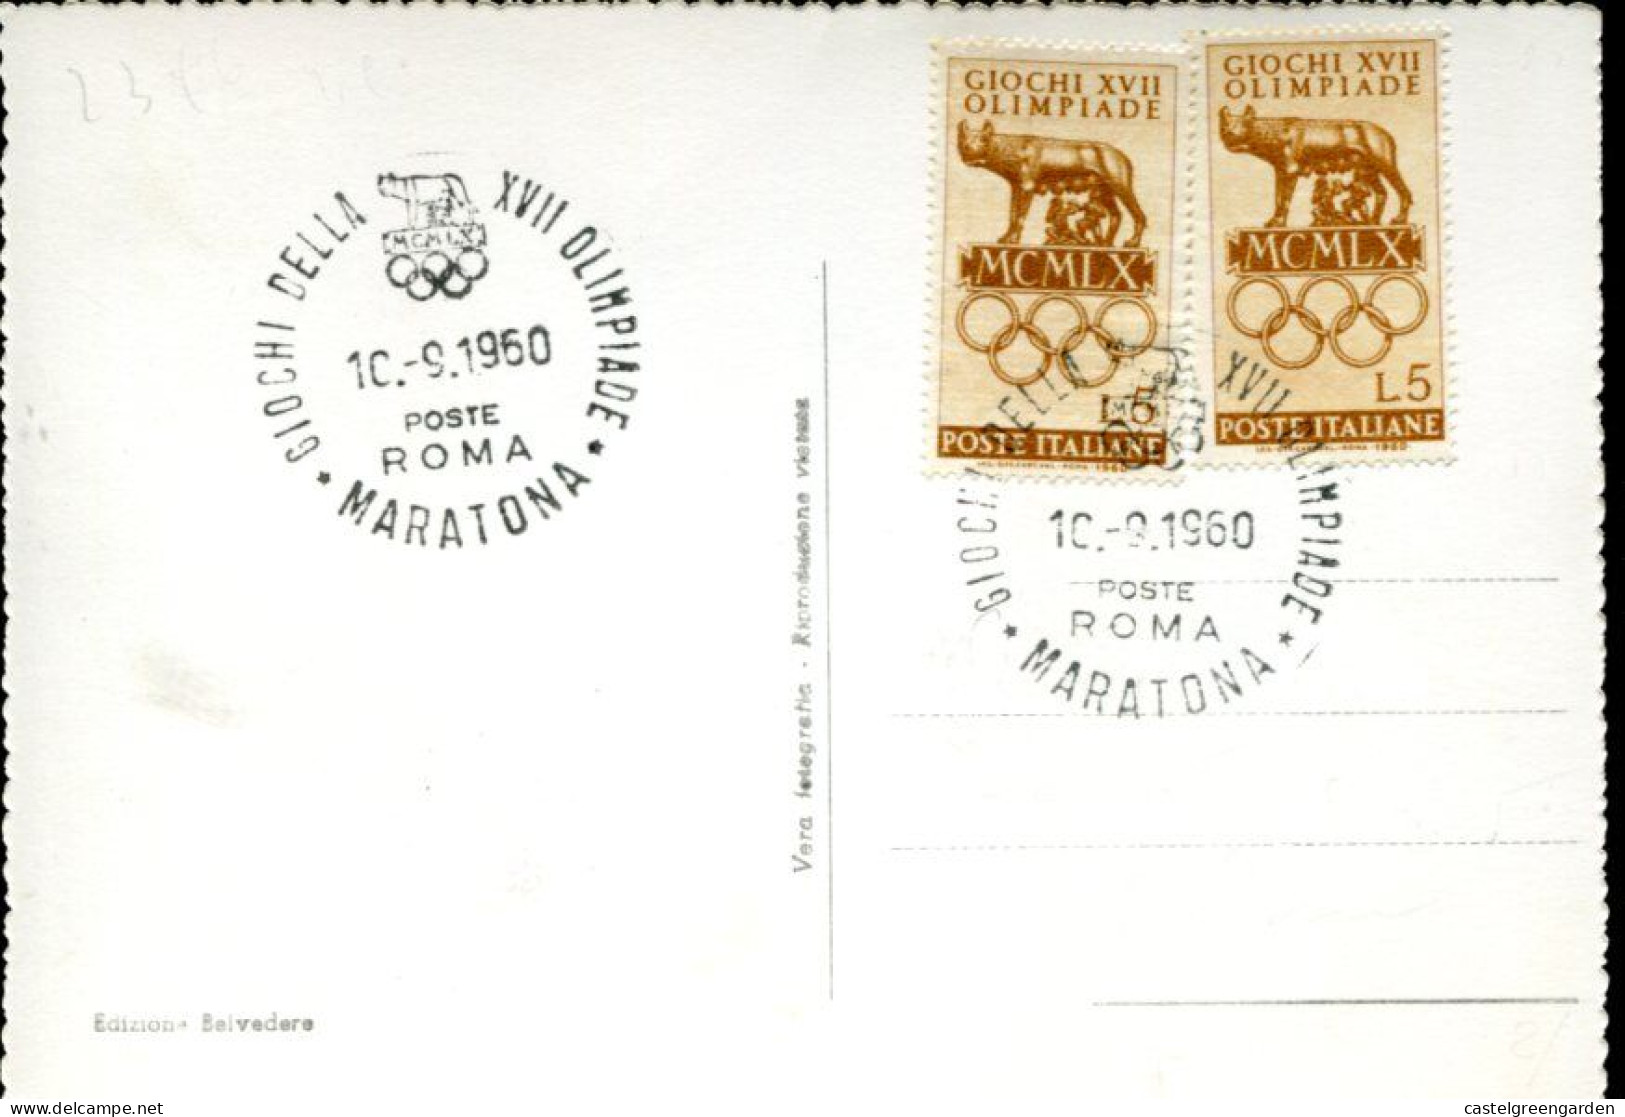 X0151 Italia Olympiade Roma Special Postmark 10.9.1960 Maratona,  Olympiade Of Rome 1960 - Sommer 1960: Rom